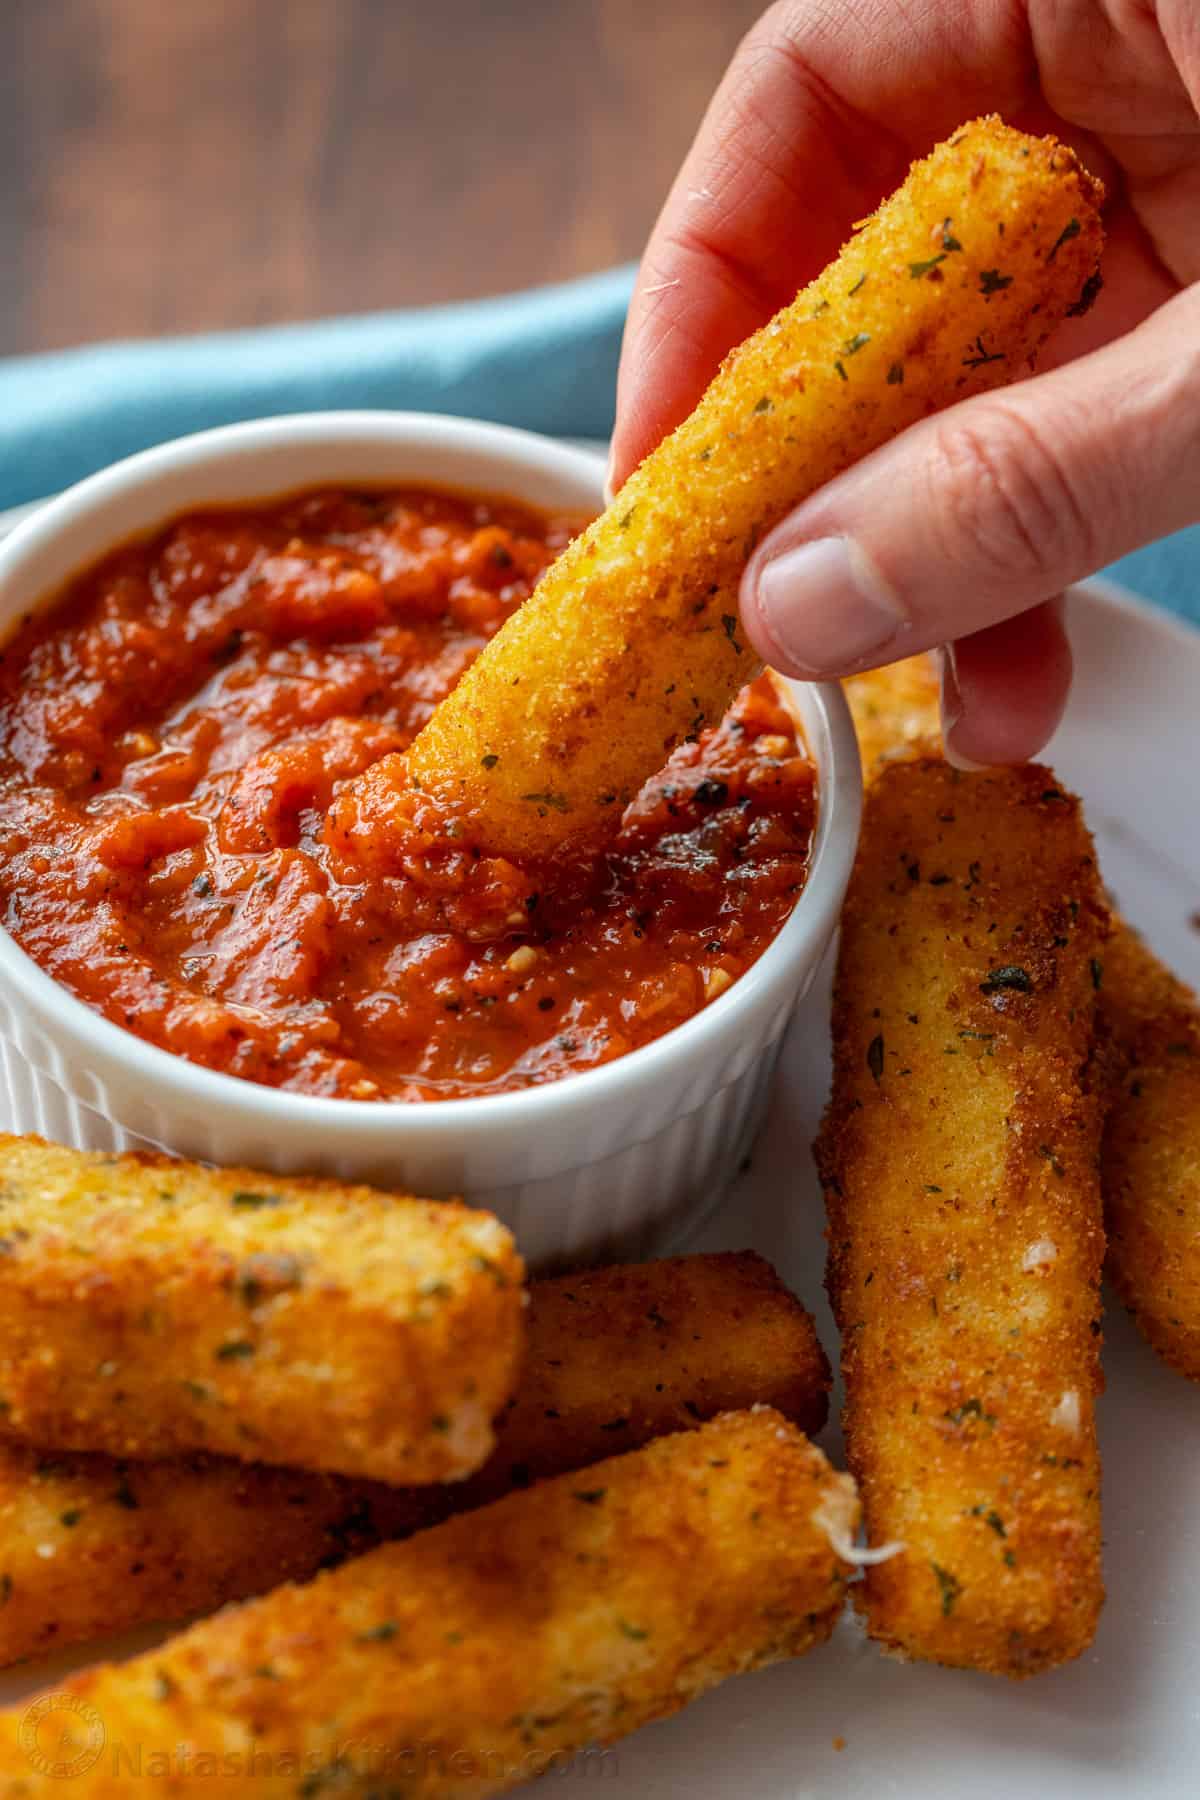 Une main trempe un bâtonnet de fromage mozzarella dans un bol de sauce marinara, à côté de plus de bâtonnets de fromage sur une assiette.